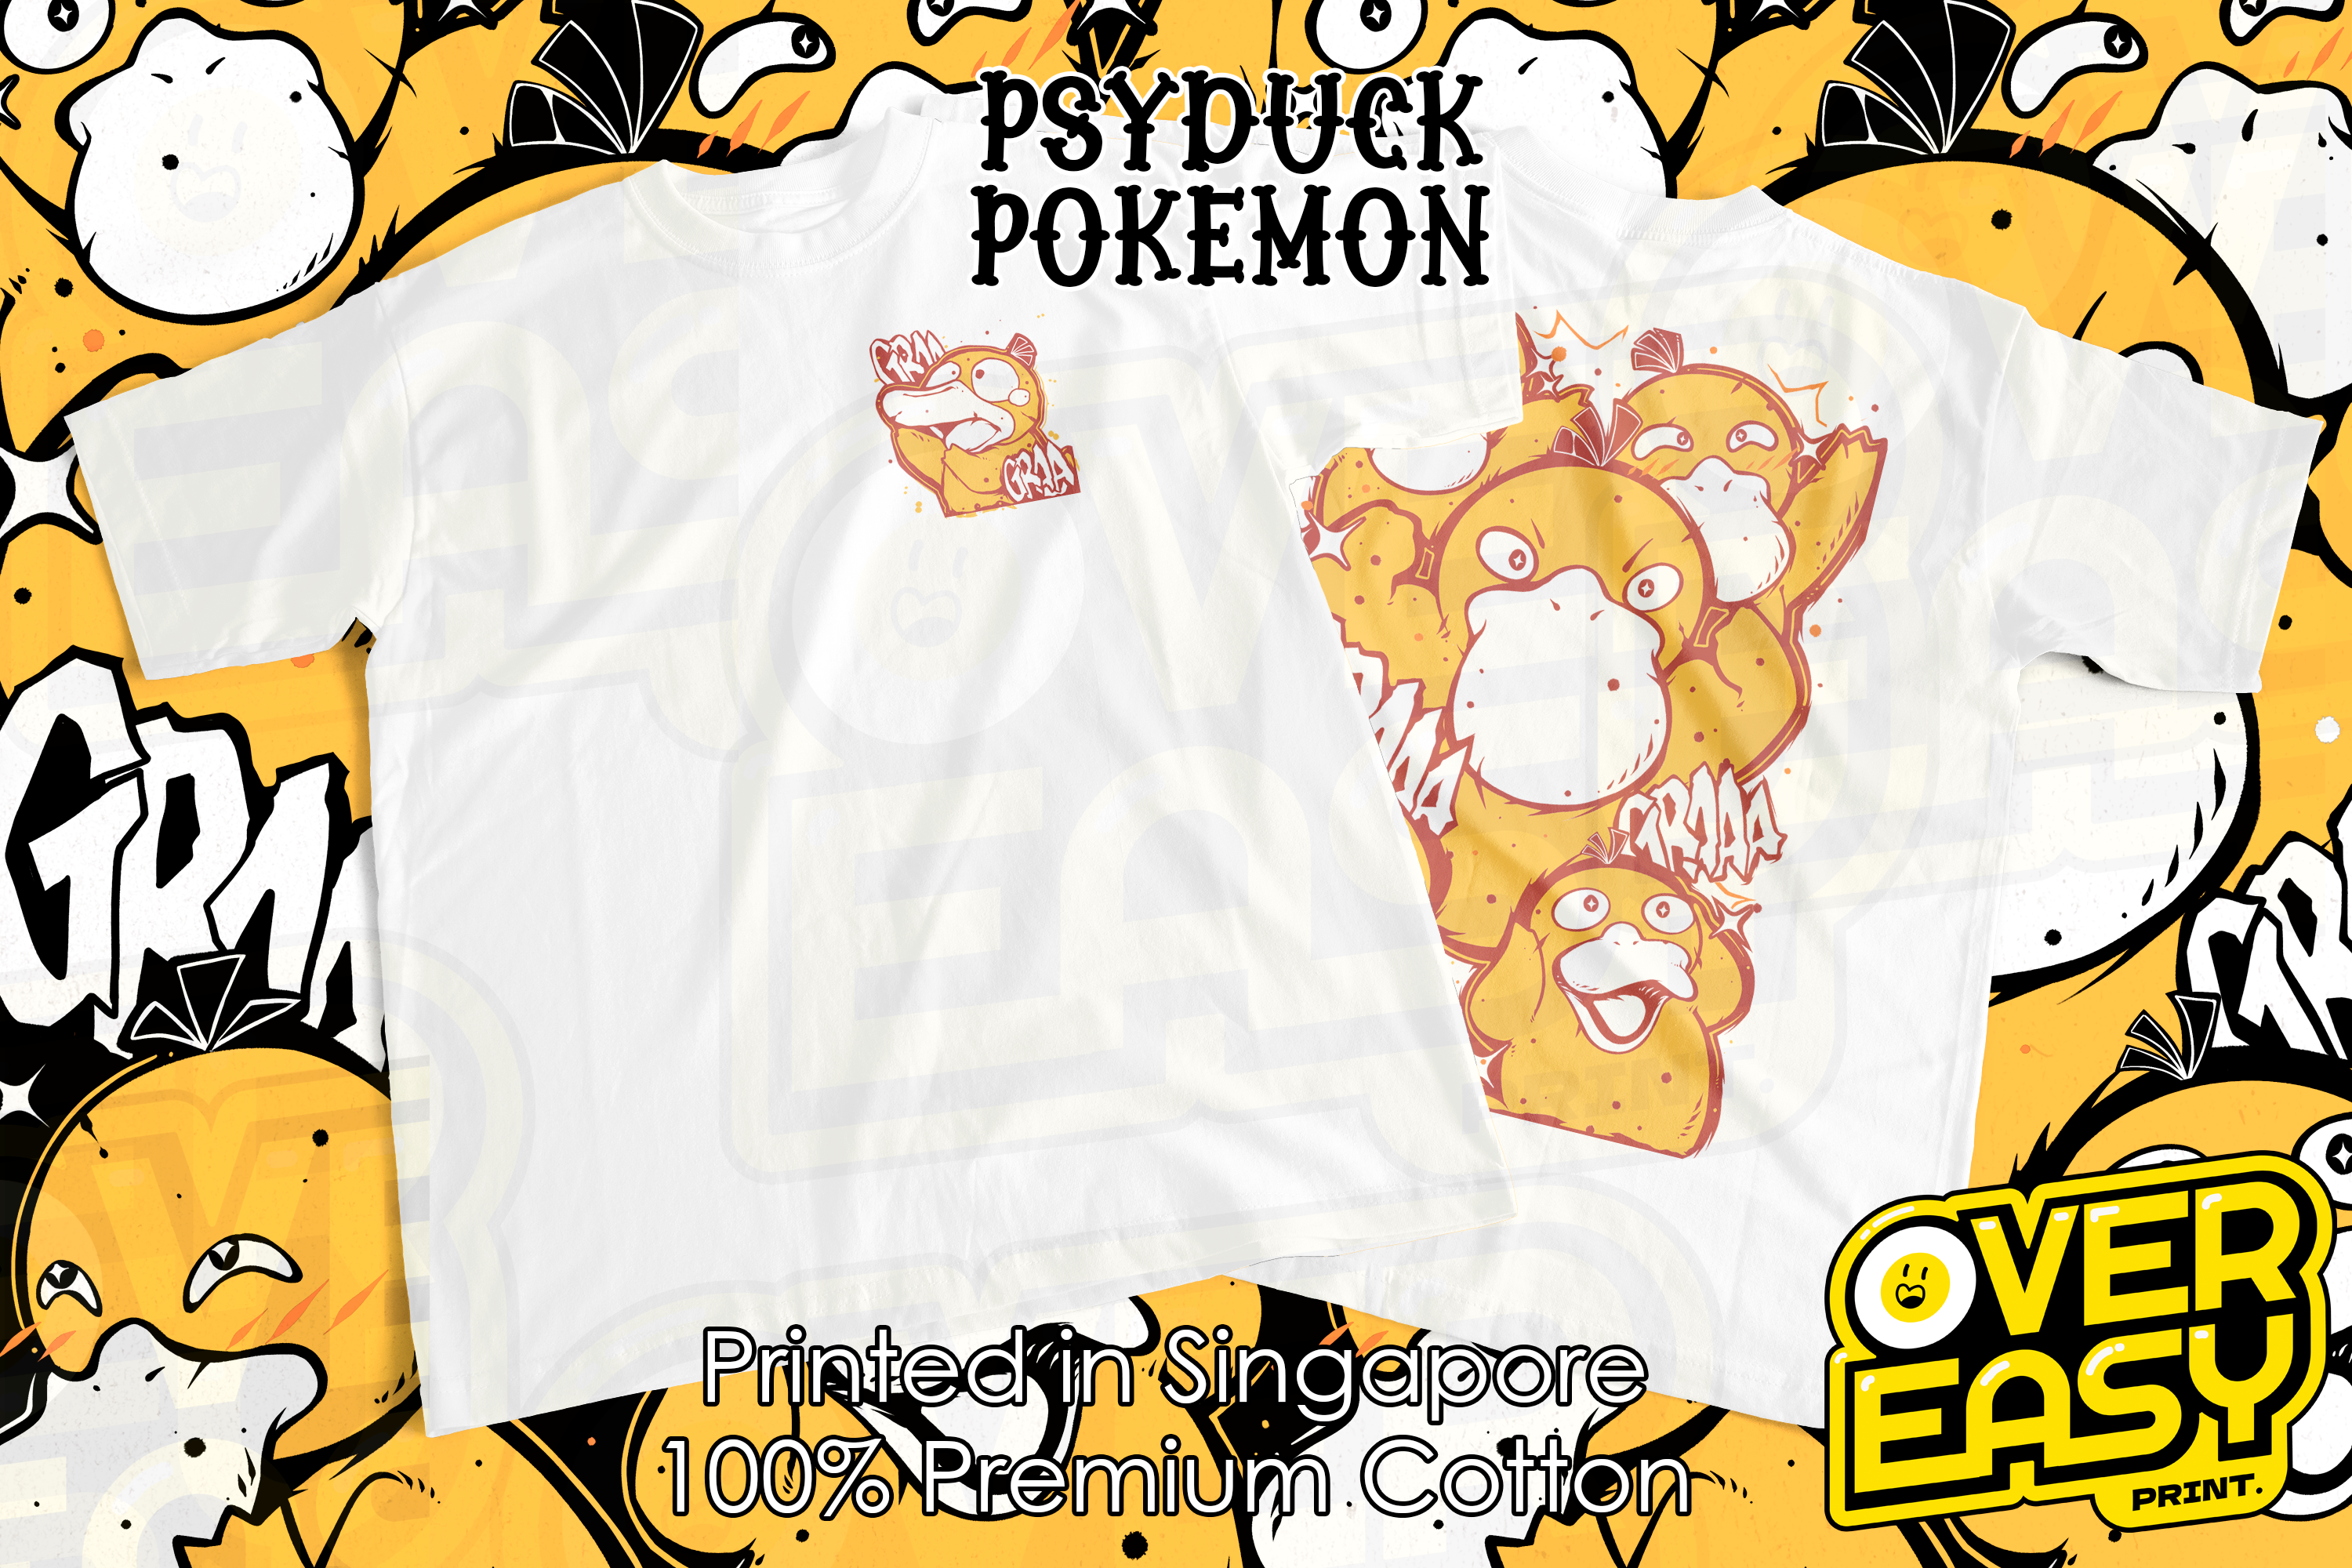 Psyduck Pokemon Fanart T-Shirt